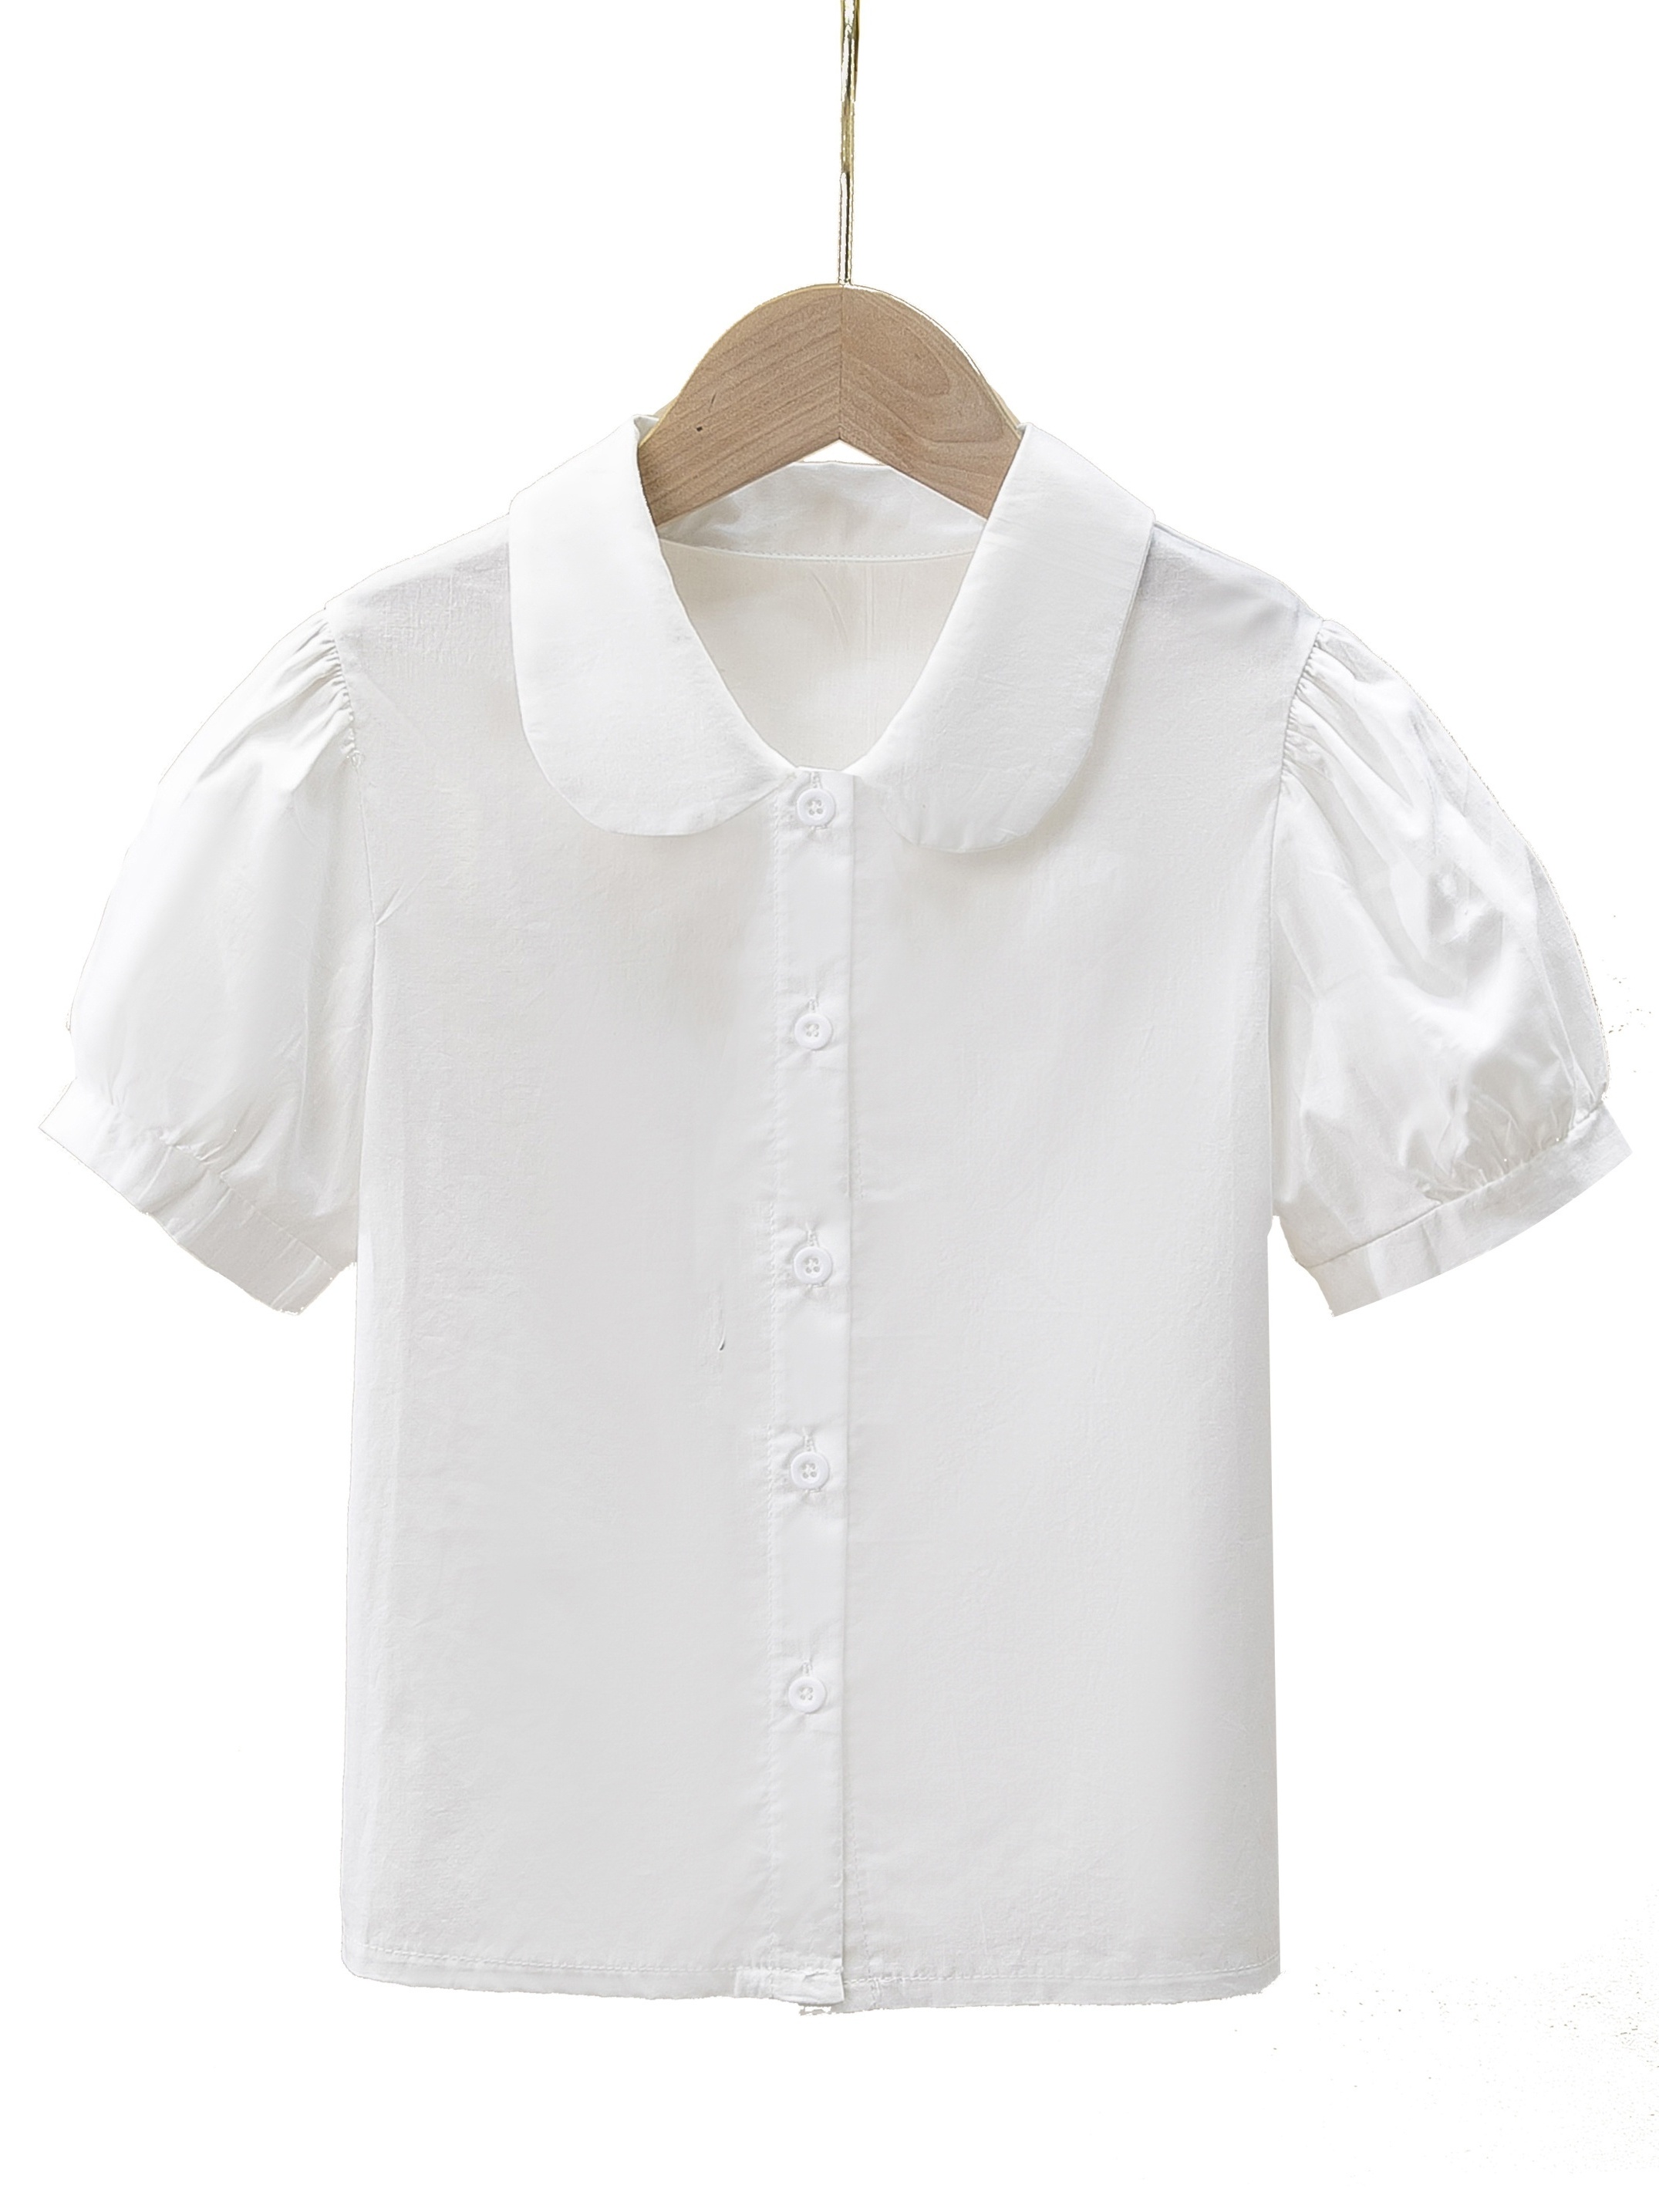 Camisetas para bebés y niños de 0 a 5 años de edad, blusa de color liso,  ropa de algodón, manga con volantes, camiseta sin mangas para niñas jóvenes